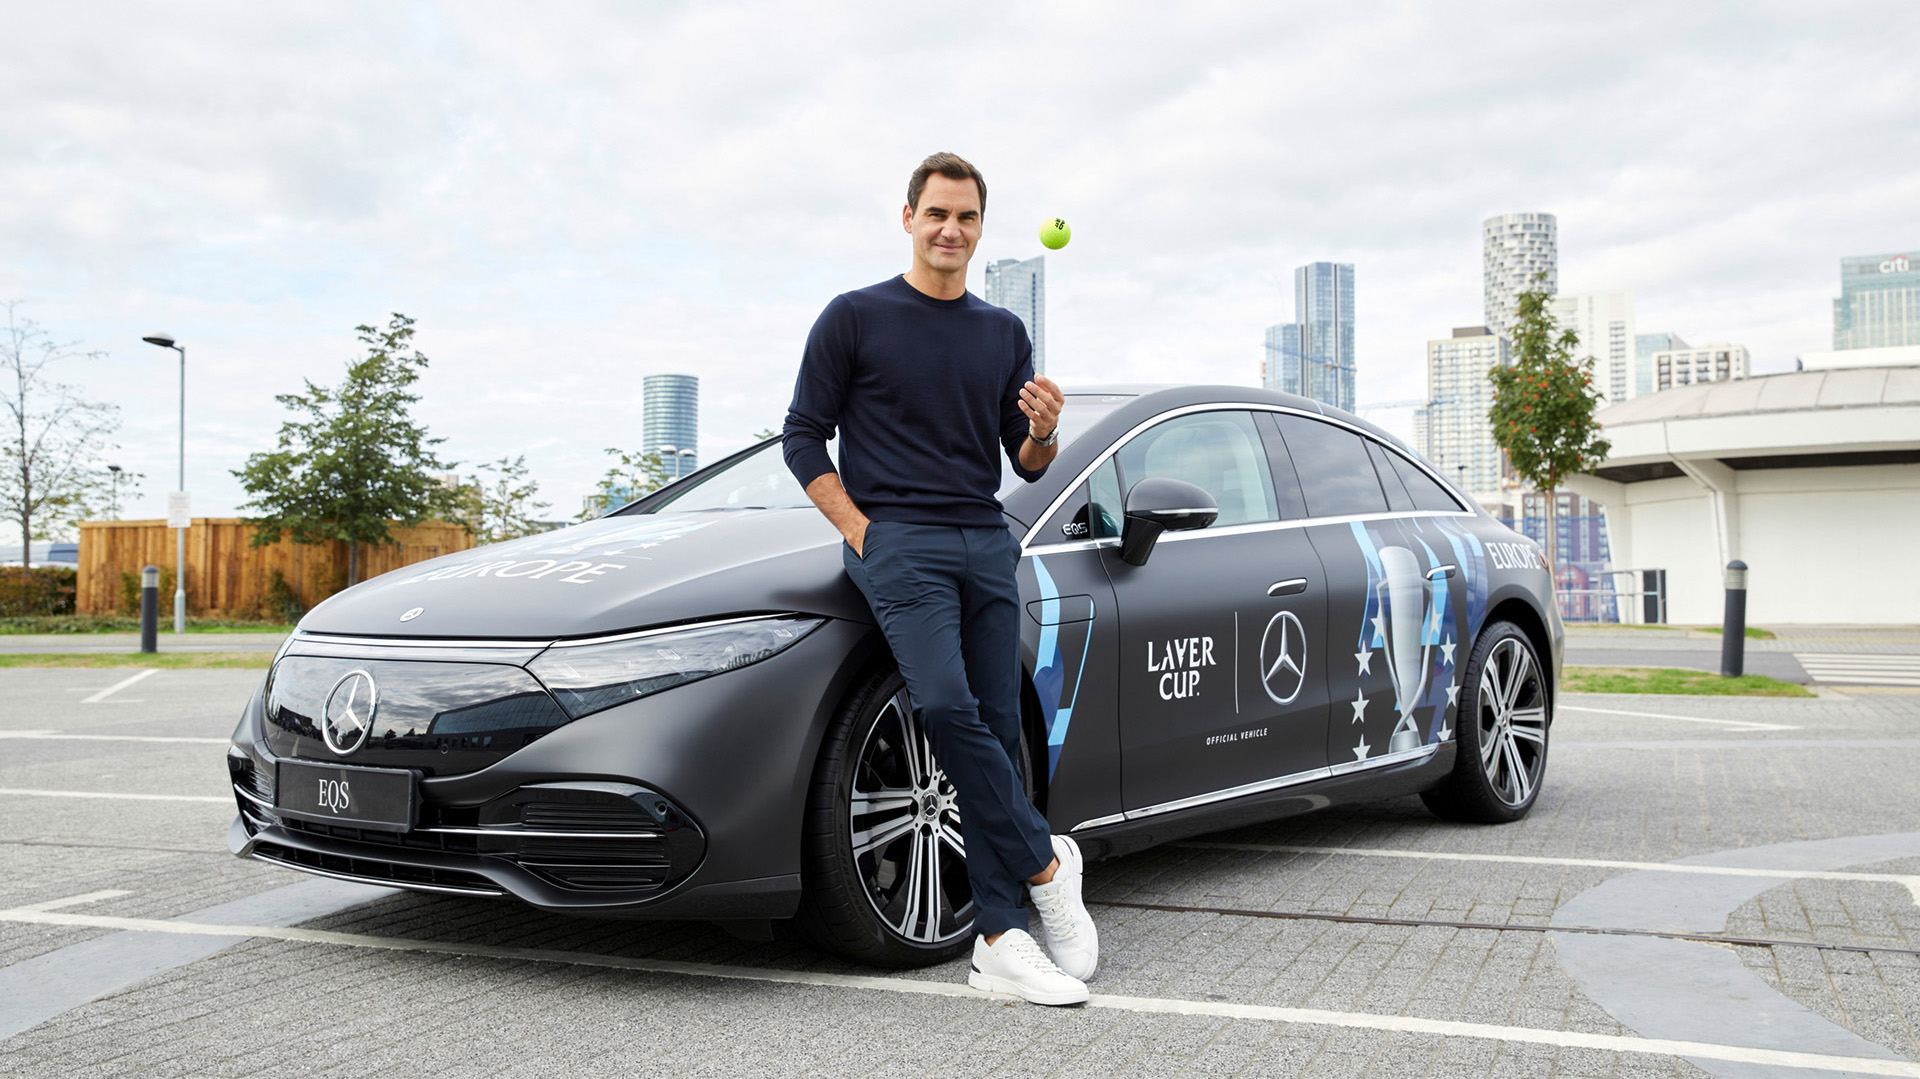 La despedida de Federer en la Laver Cup que se jugó en Londres, fue perfecta para que Mercedes hiciera el anuncio y el homenaje, ya que además de patrocinar al suizo, la marca es el sponsor del torneo desde su inicio